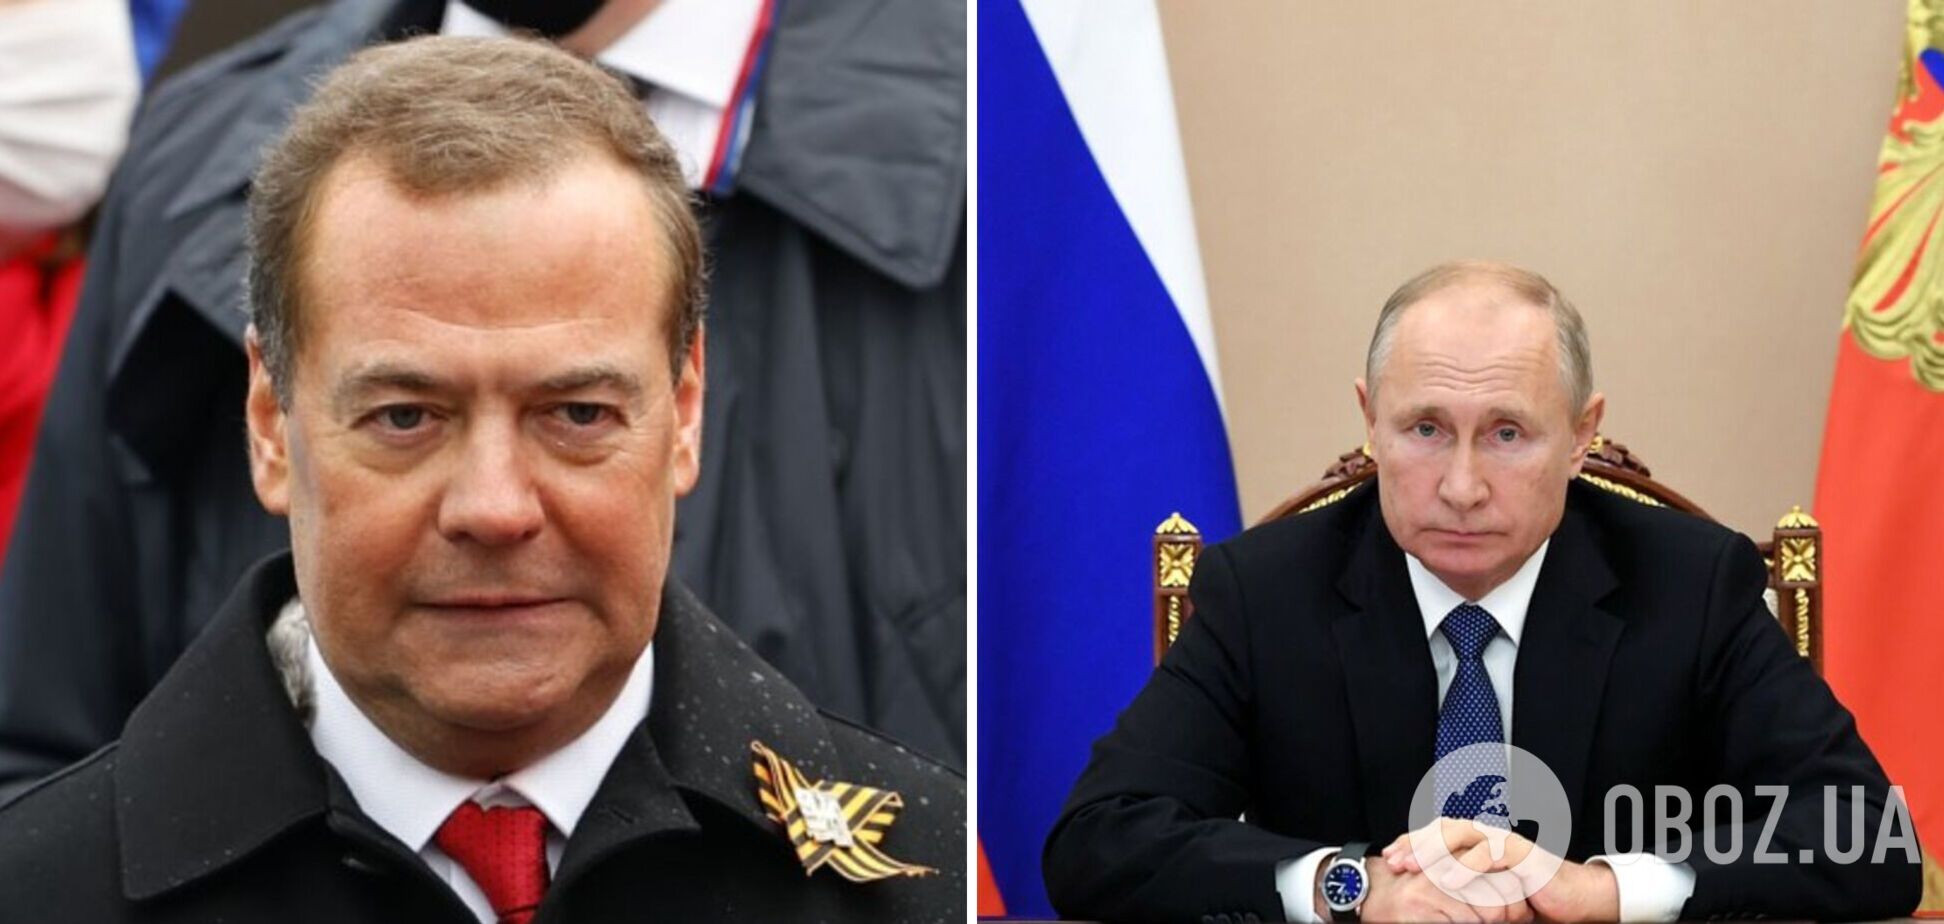 Почему бы 'полковнику' Медведеву не сгореть в танке? А то какой-то он не настоящий патриот